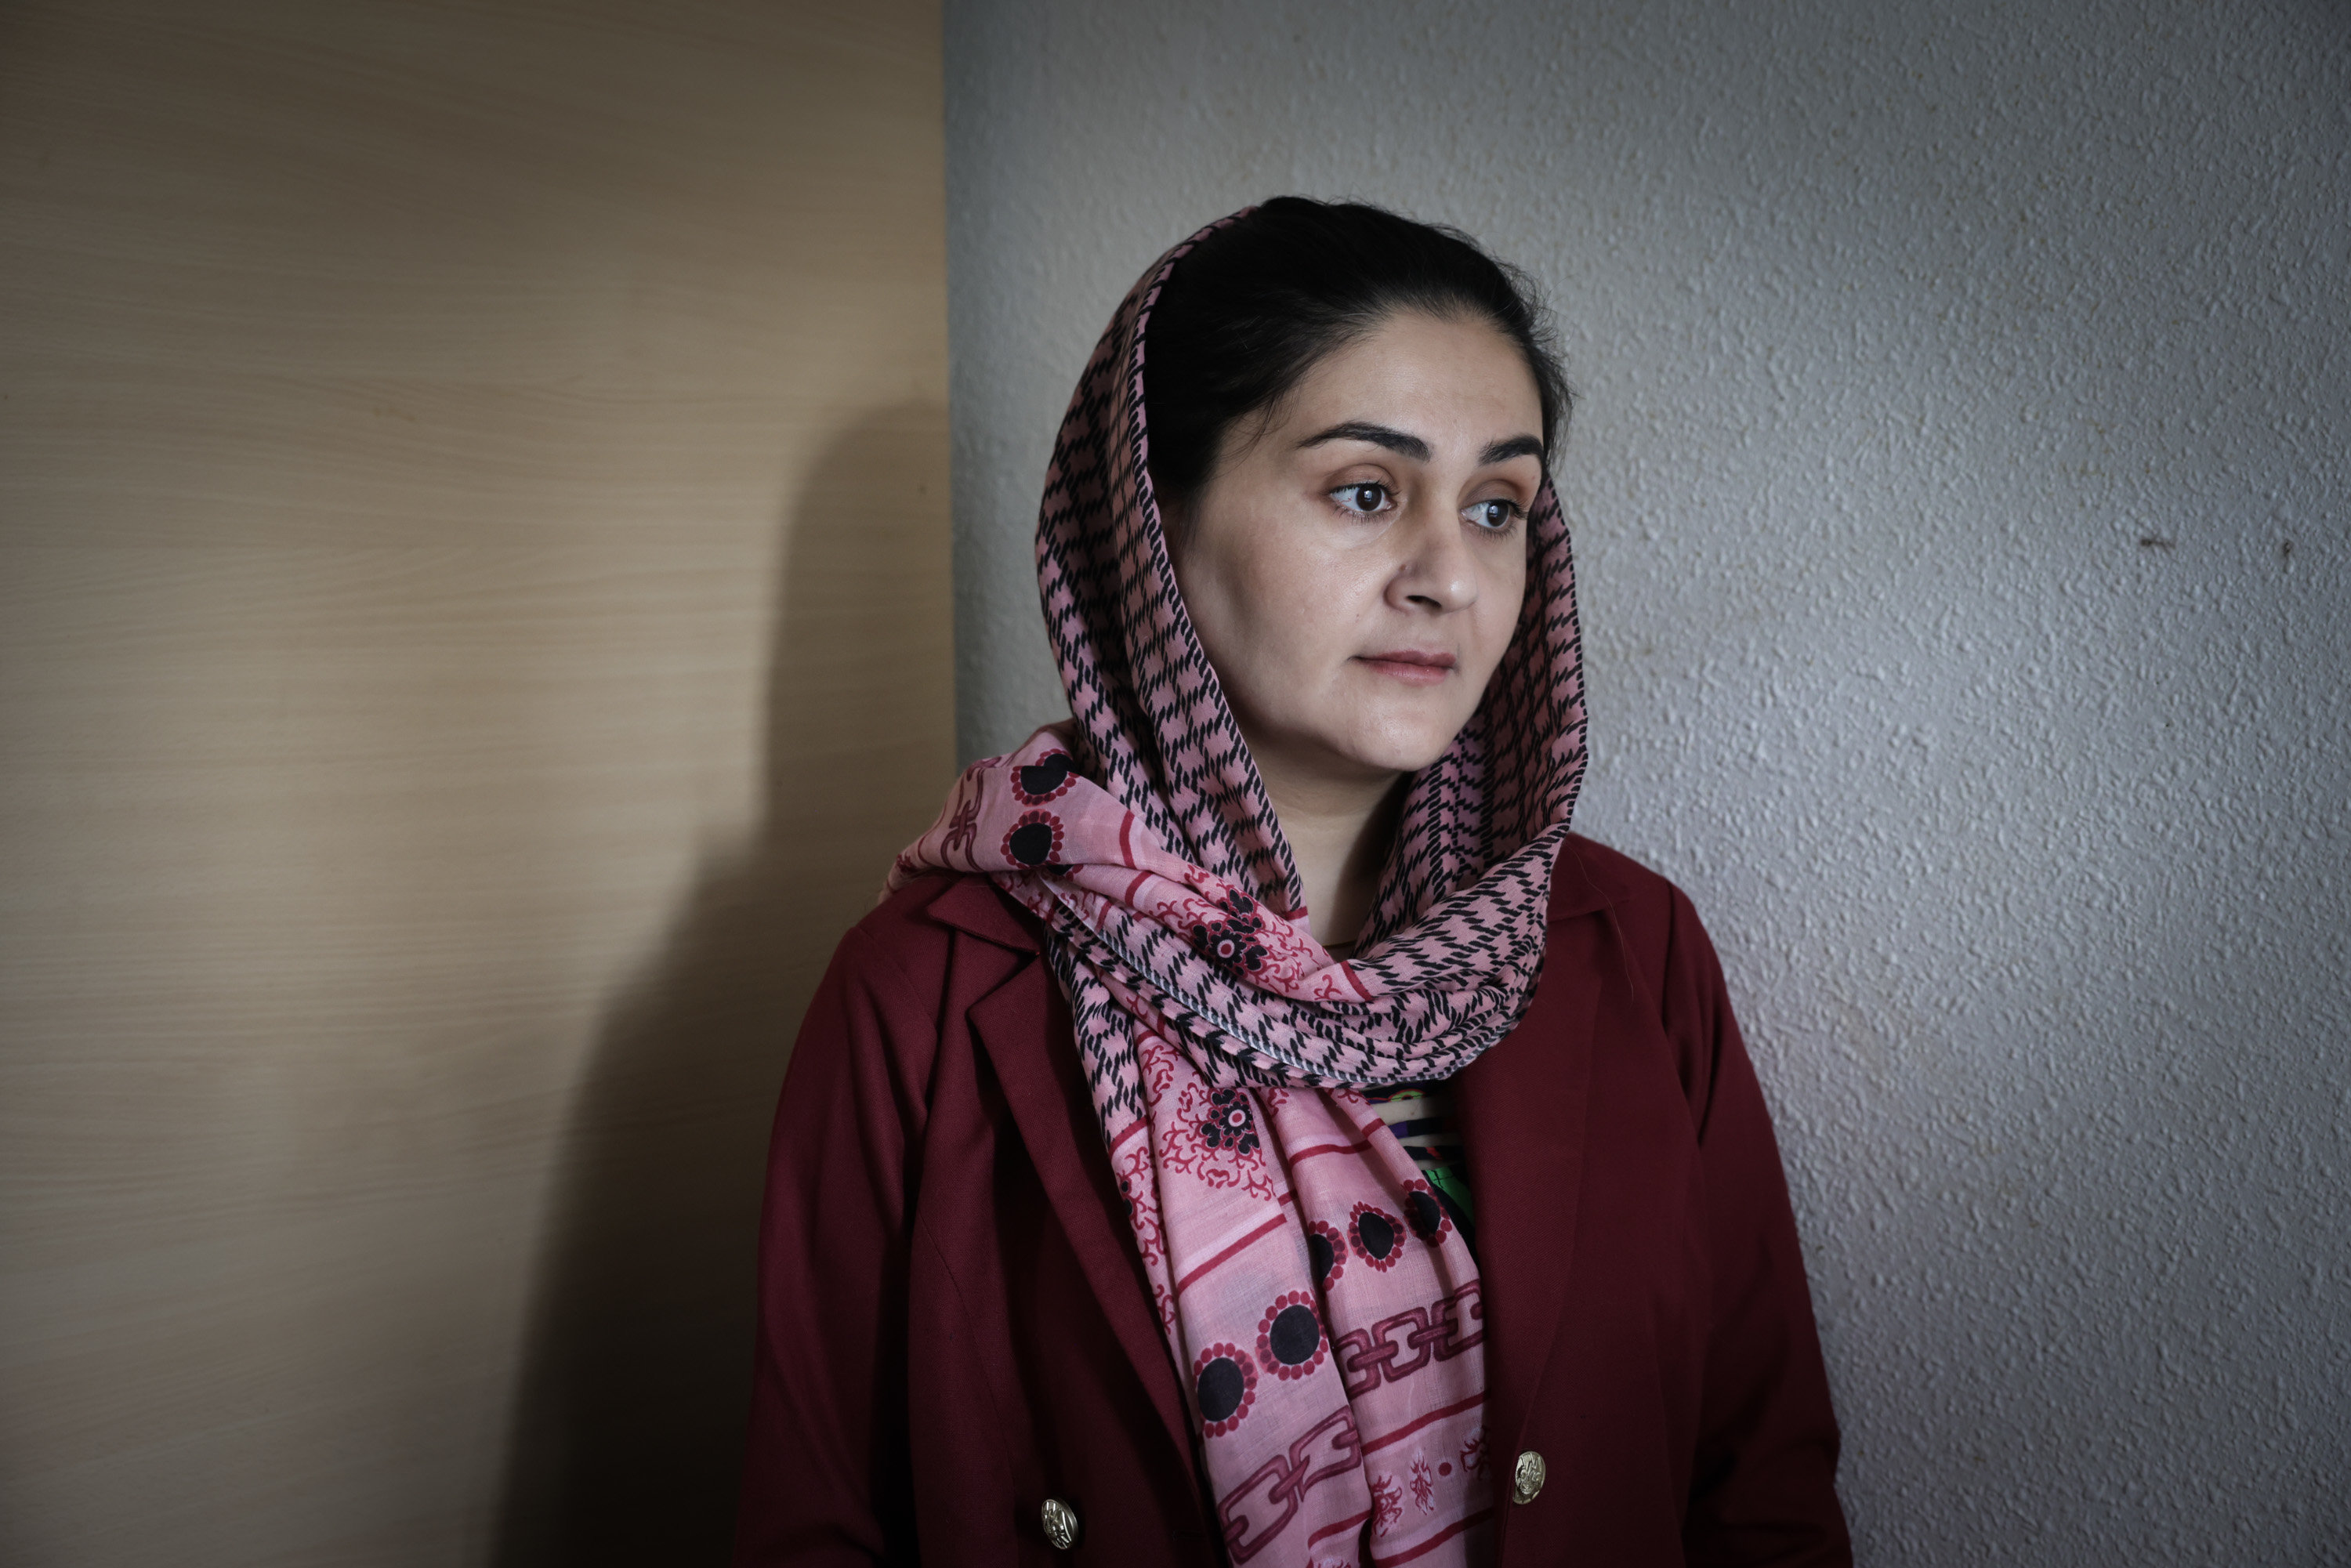 Craignant pour sa vie, Zakia, 32 ans, a dû fuir les talibans et est arrivée en France le 4 septembre avec d'autres Afghanes. LP/Philippe de Poulpiquet